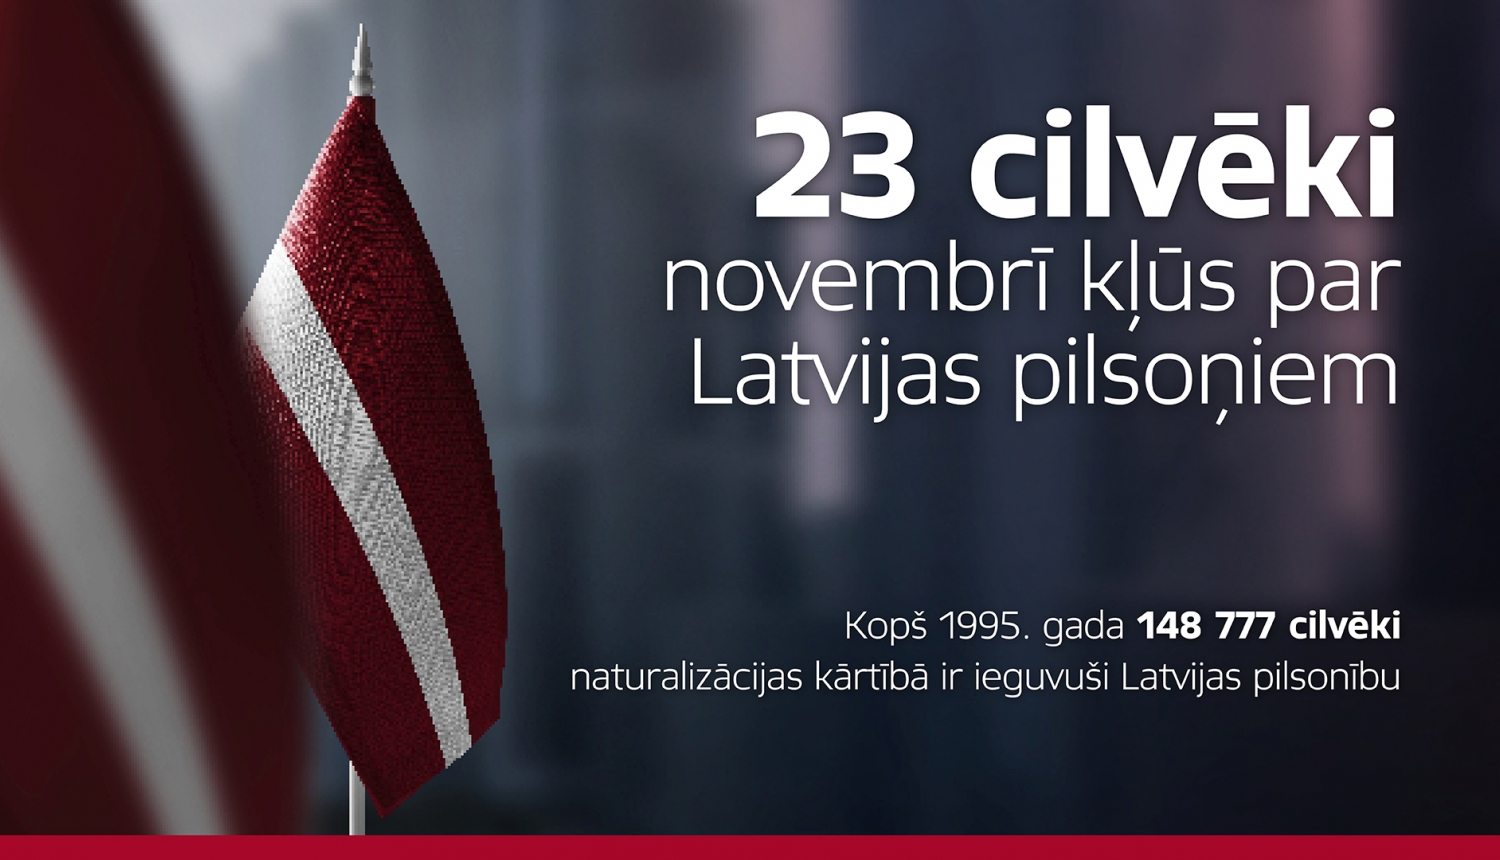 23 cilvēki novembrī kļūs par Latvijas pilsoņiem